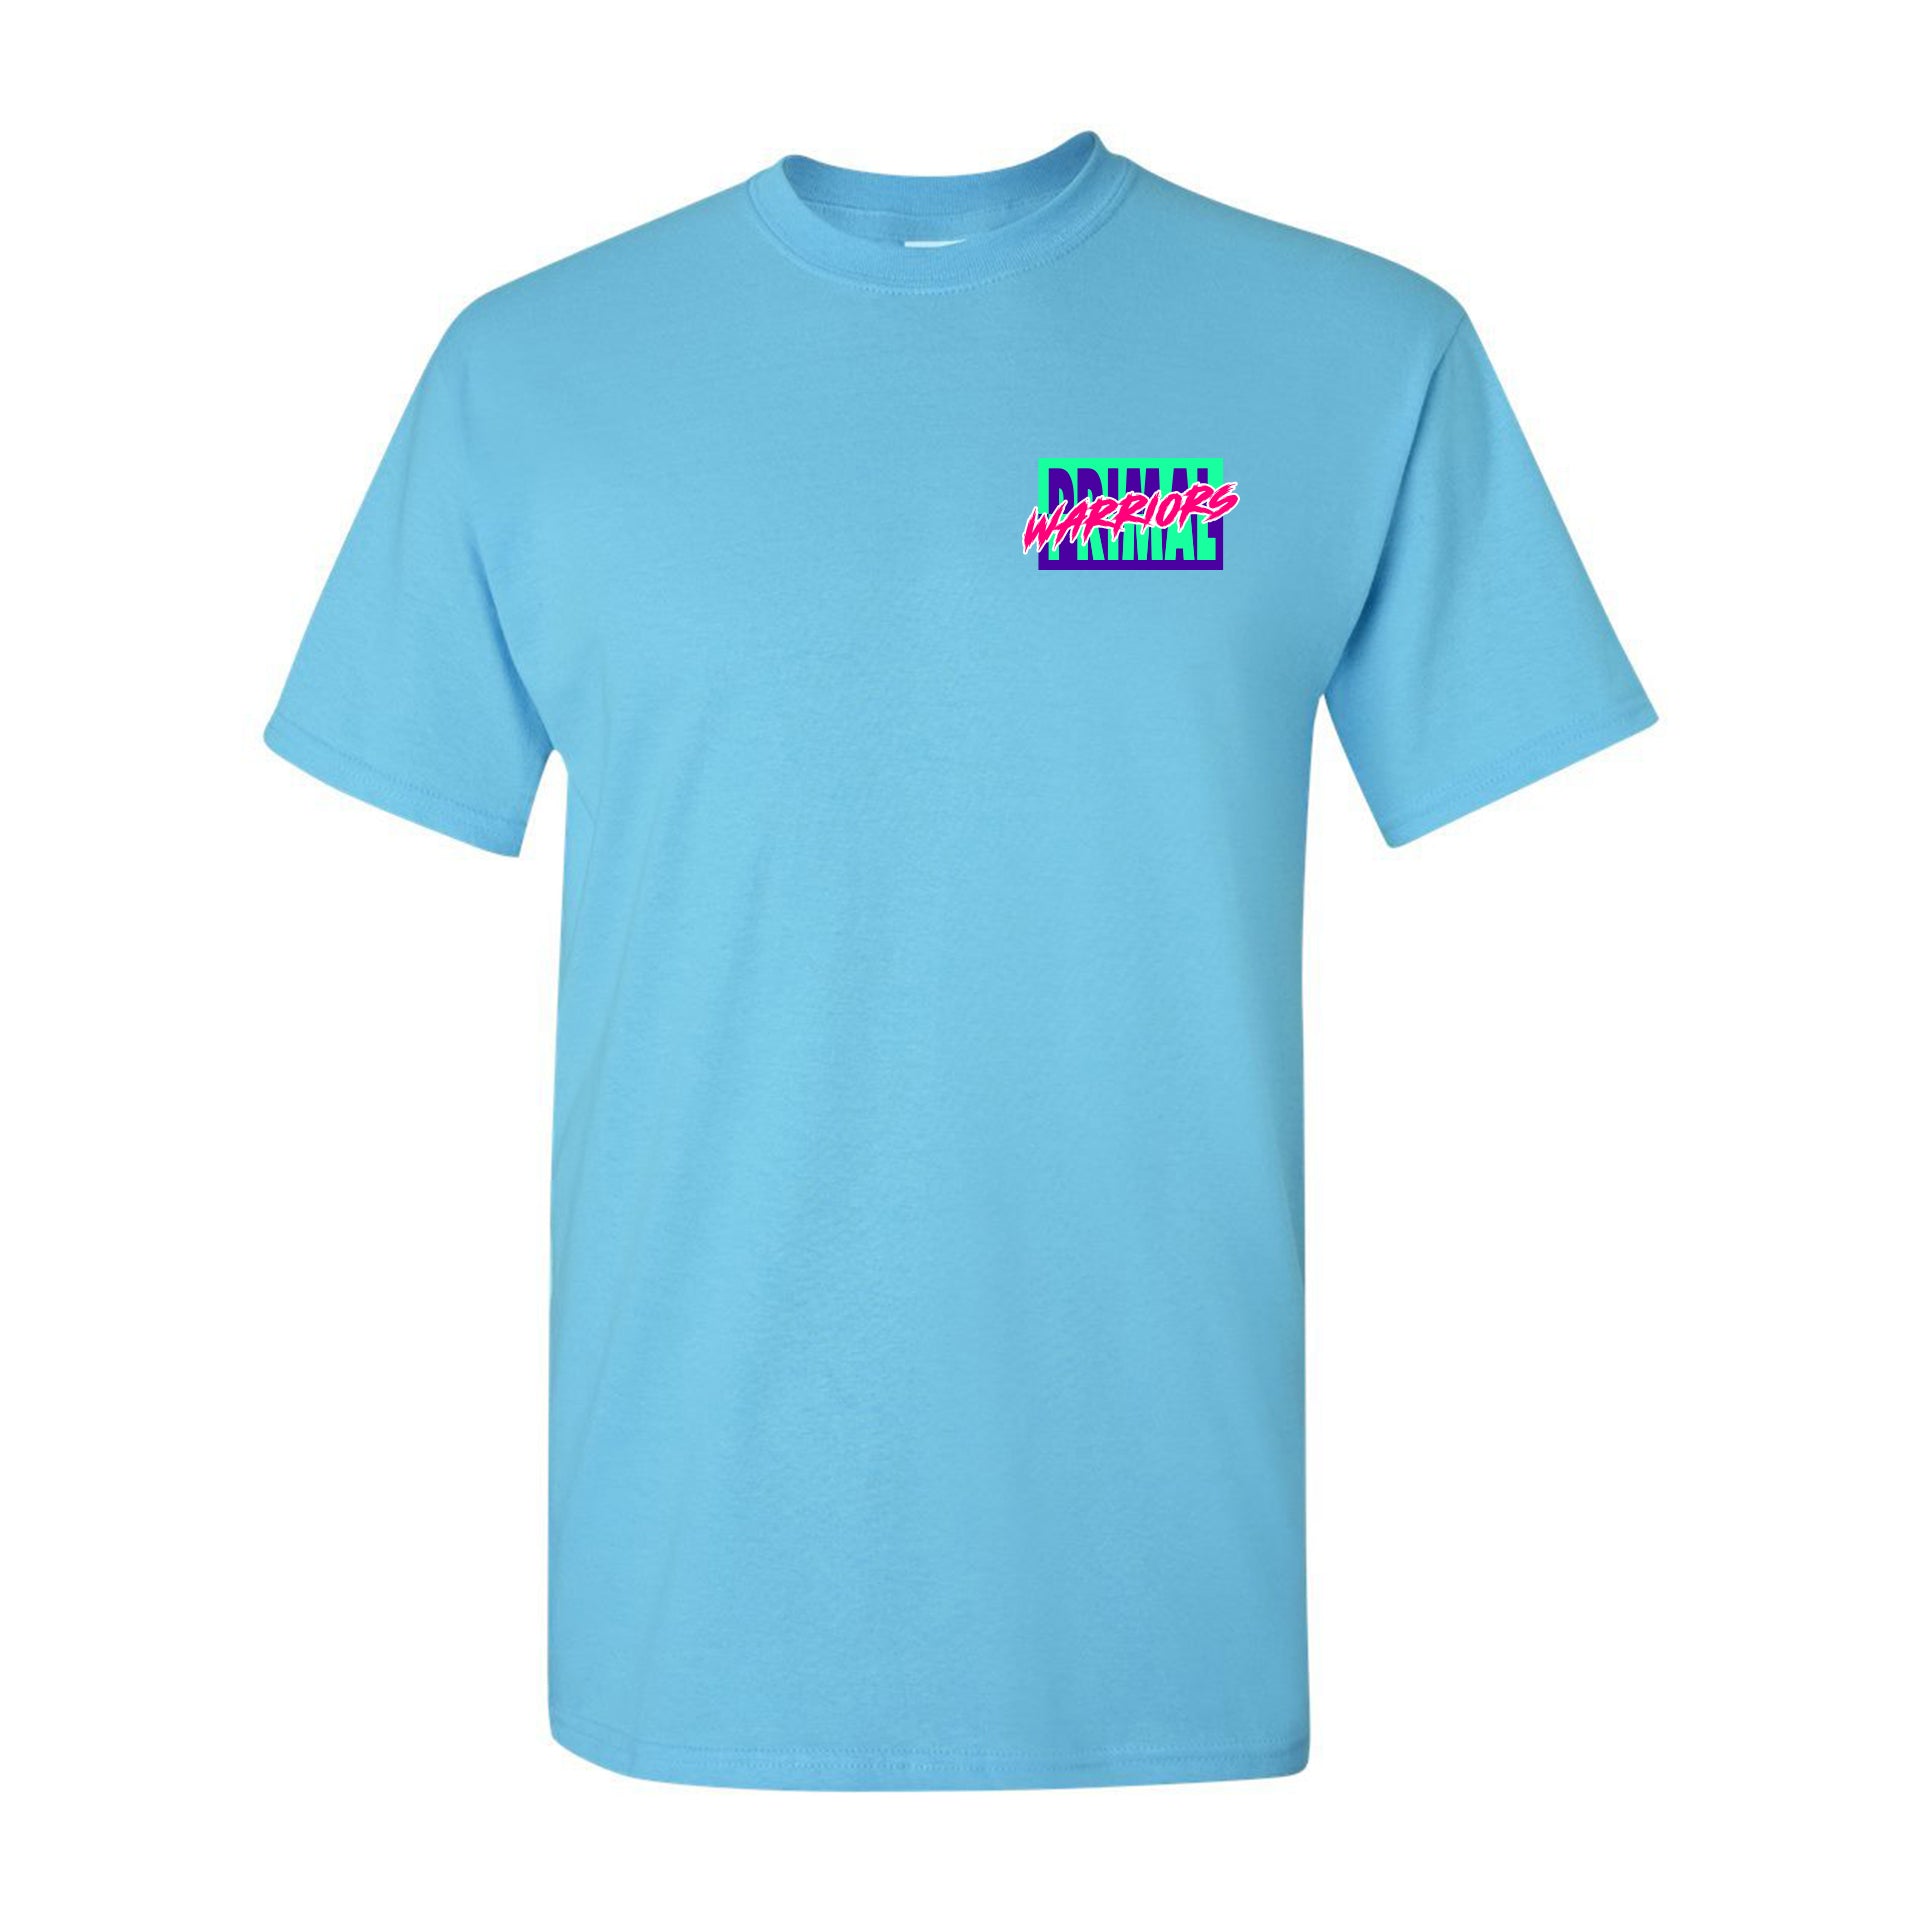 Summer Shred T-Shirt (Blue)